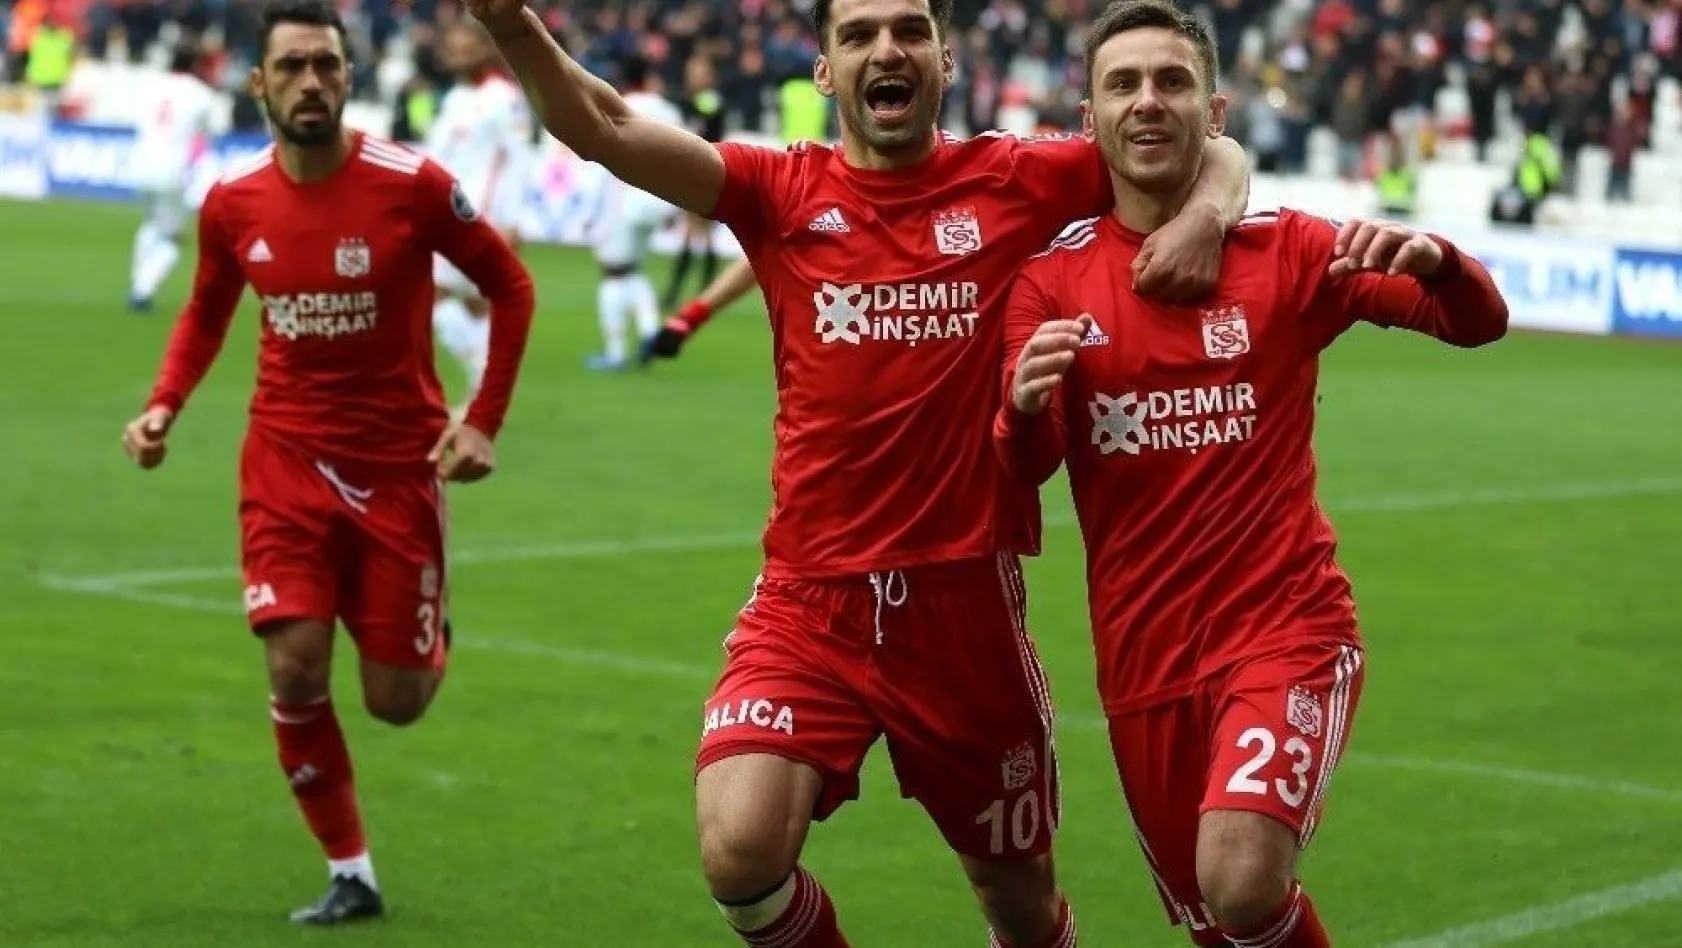 Spor Toto Süper Lig: DG Sivasspor: 2 - Göztepe: 0 (Maç sonucu)
